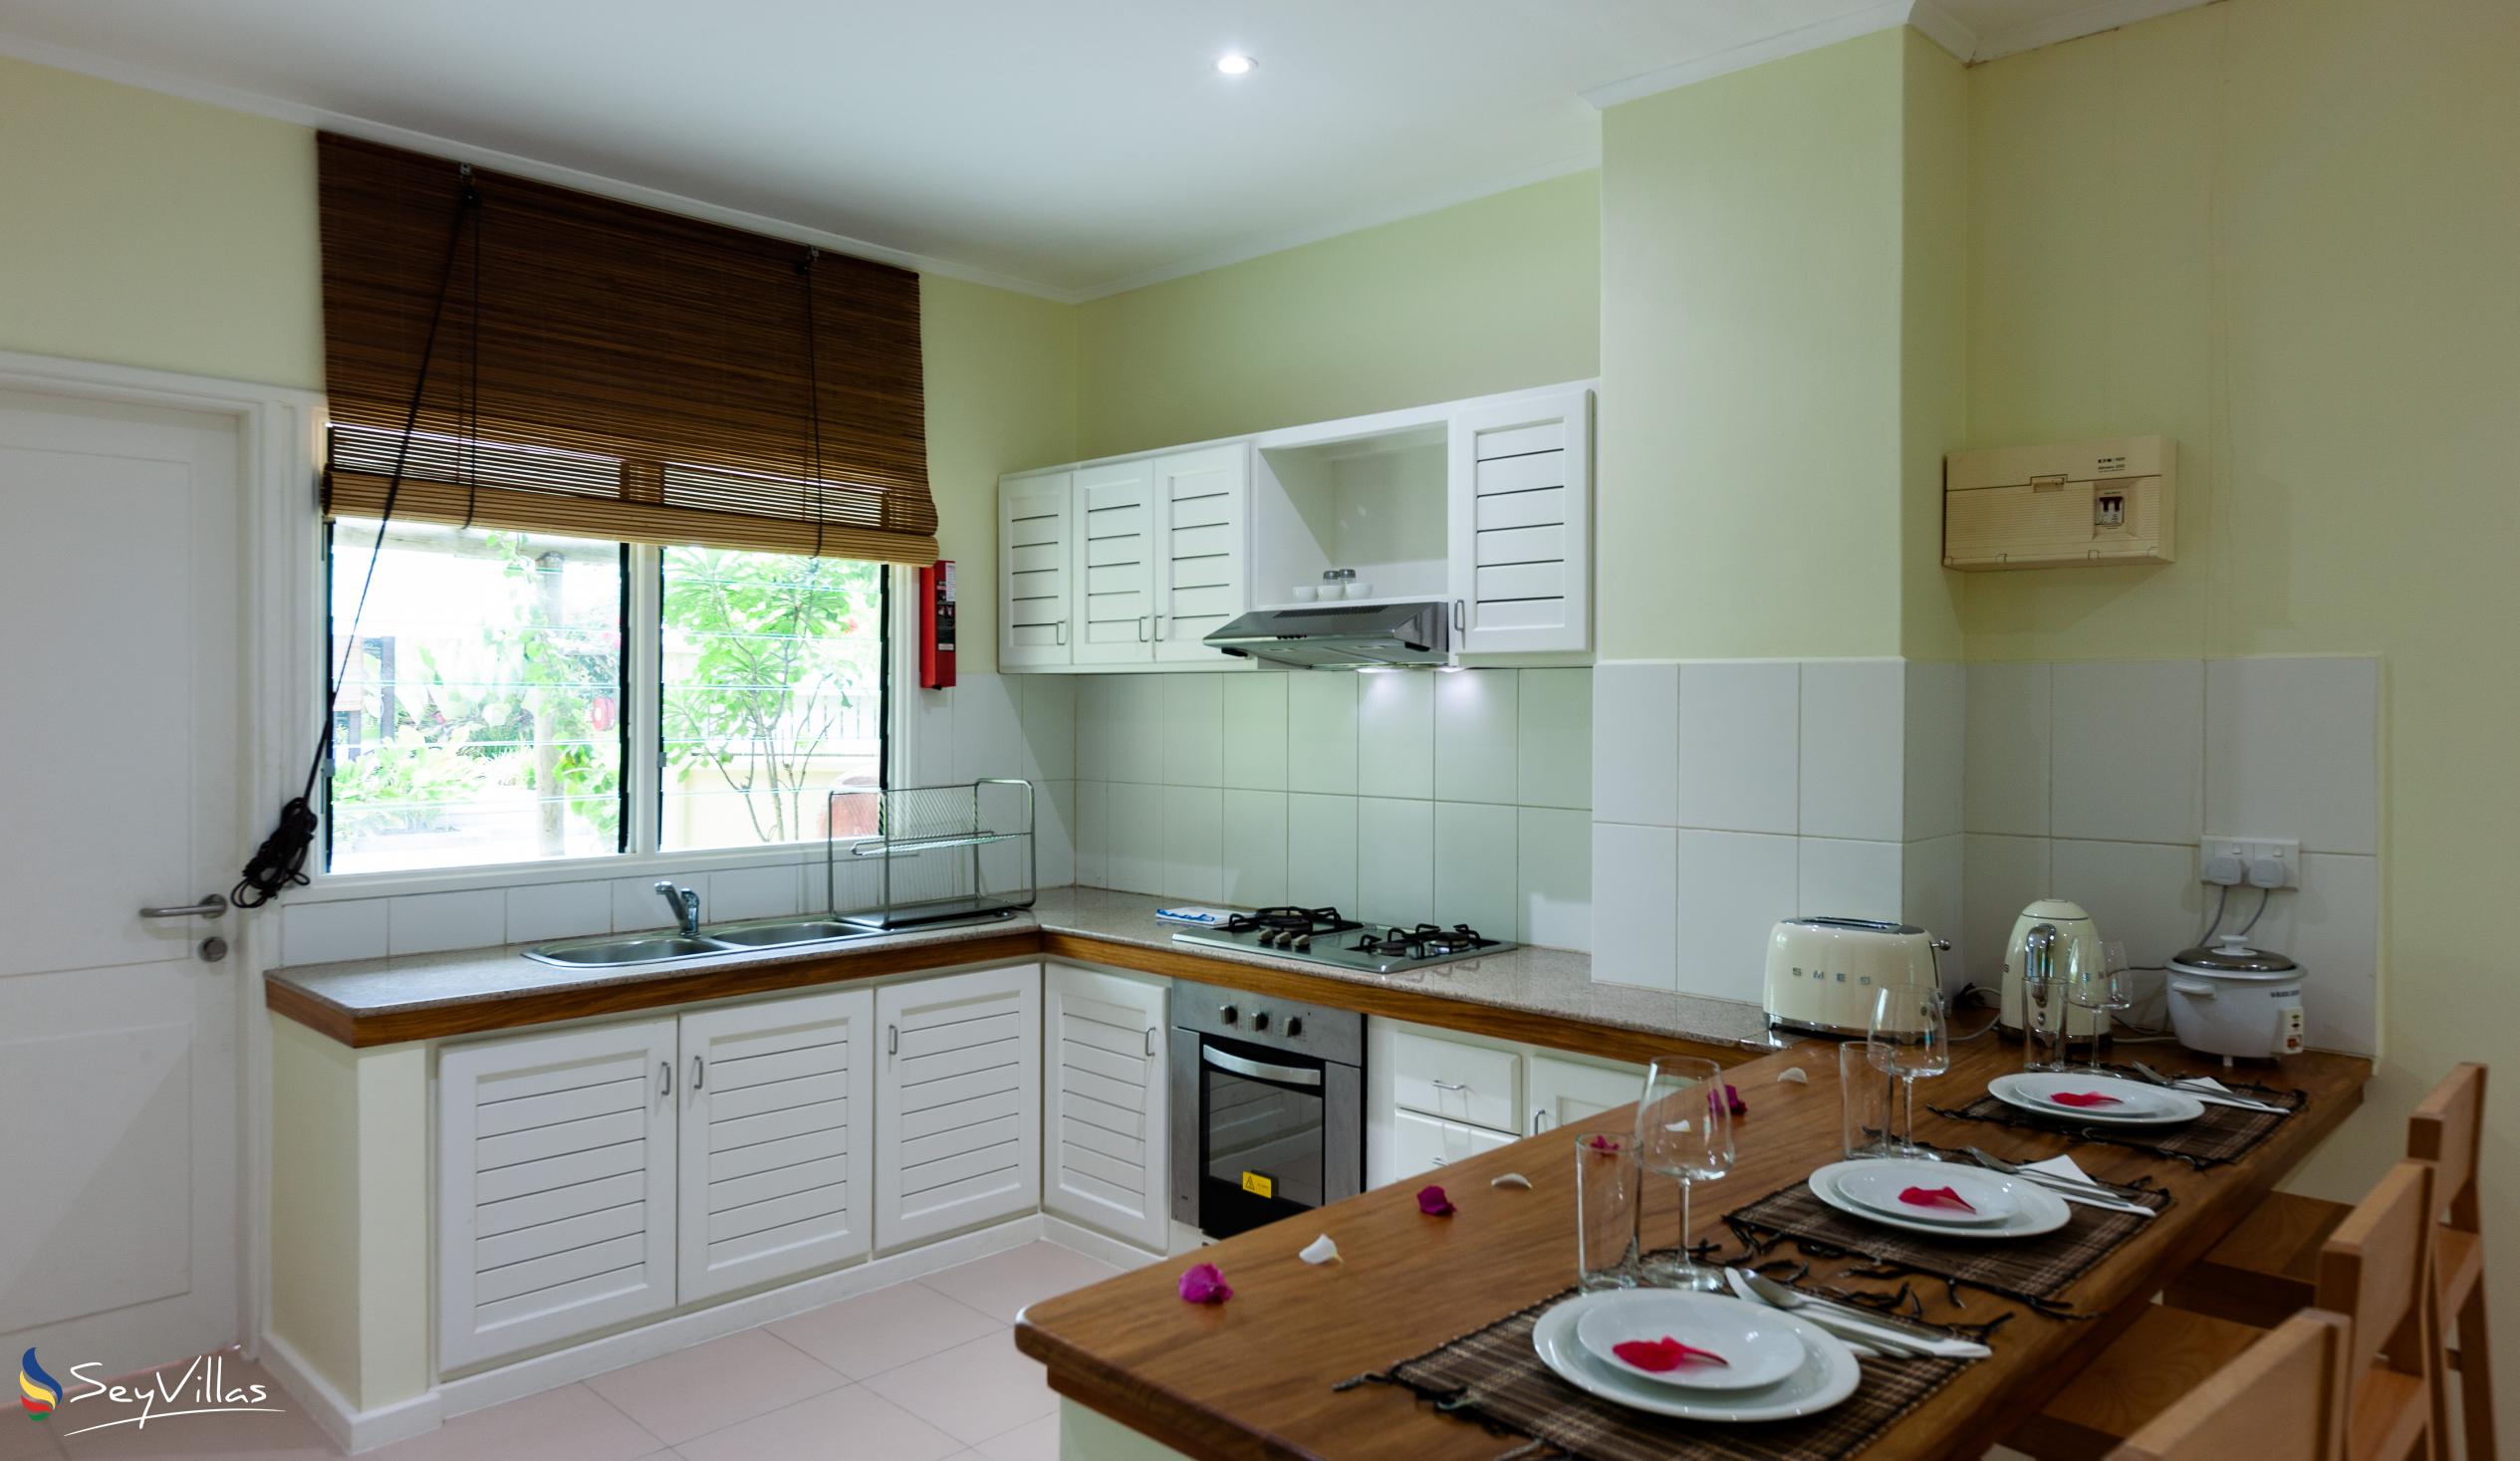 Foto 38: Residence Praslinoise - Familienappartement mit 2 Schlafzimmern (EG) - Praslin (Seychellen)